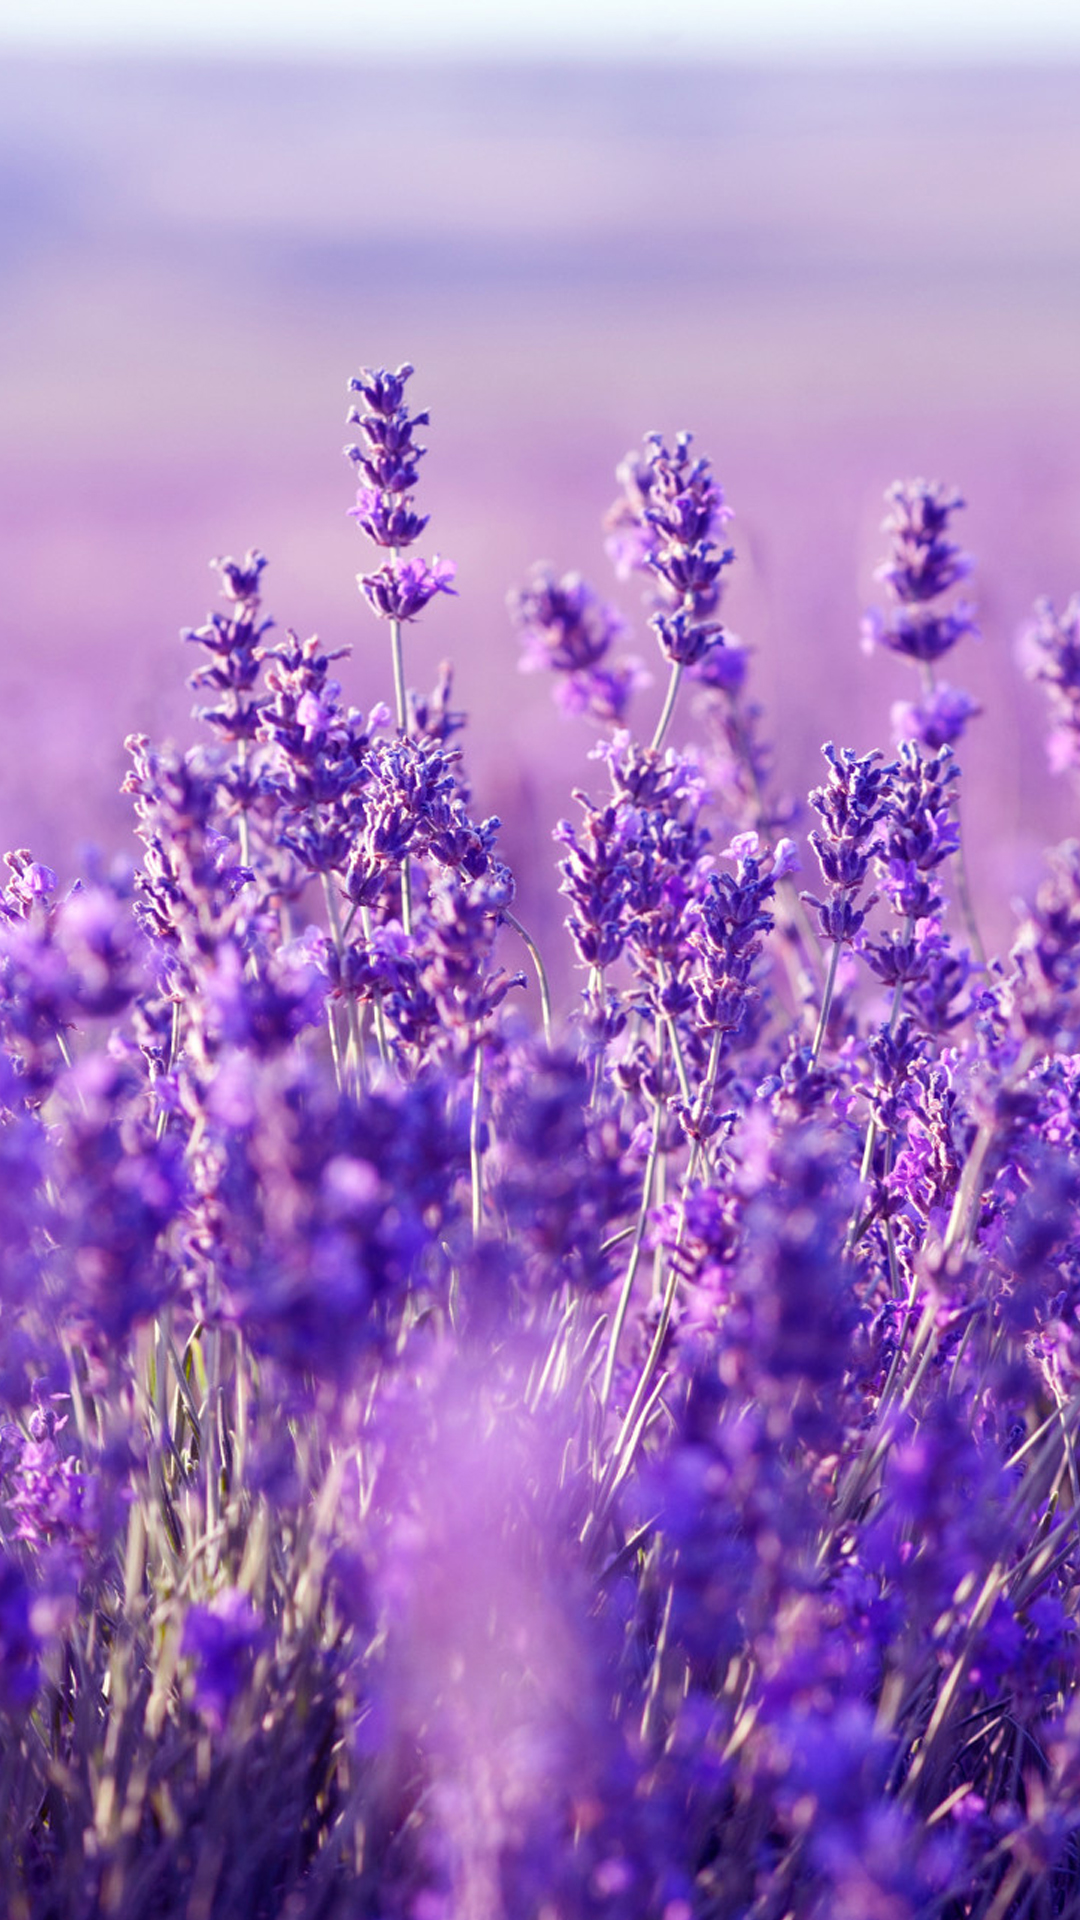 Khi ghép đôi sự mộc mạc của hoa oải hương và sự độc đáo của lavender, bạn sẽ tạo ra sự pha trộn độc đáo của hai thế giới khác nhau. Xem hình ảnh về hoa oải hương và lavender để khám phá vẻ đẹp tuyệt vời này.